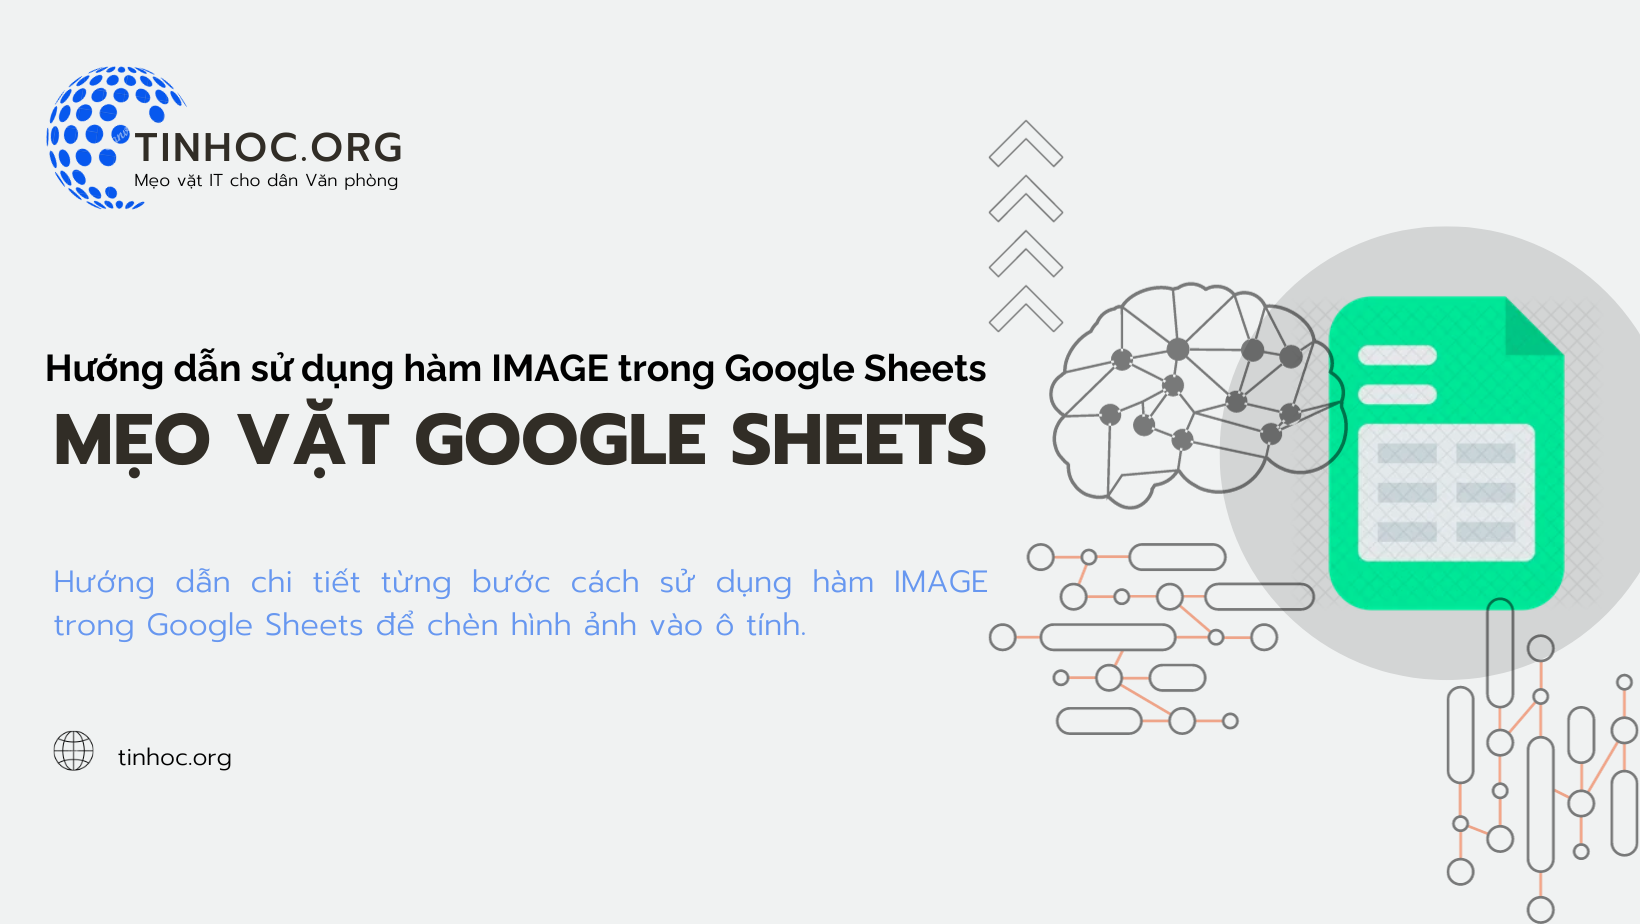 Hướng dẫn sử dụng hàm IMAGE trong Google Sheets